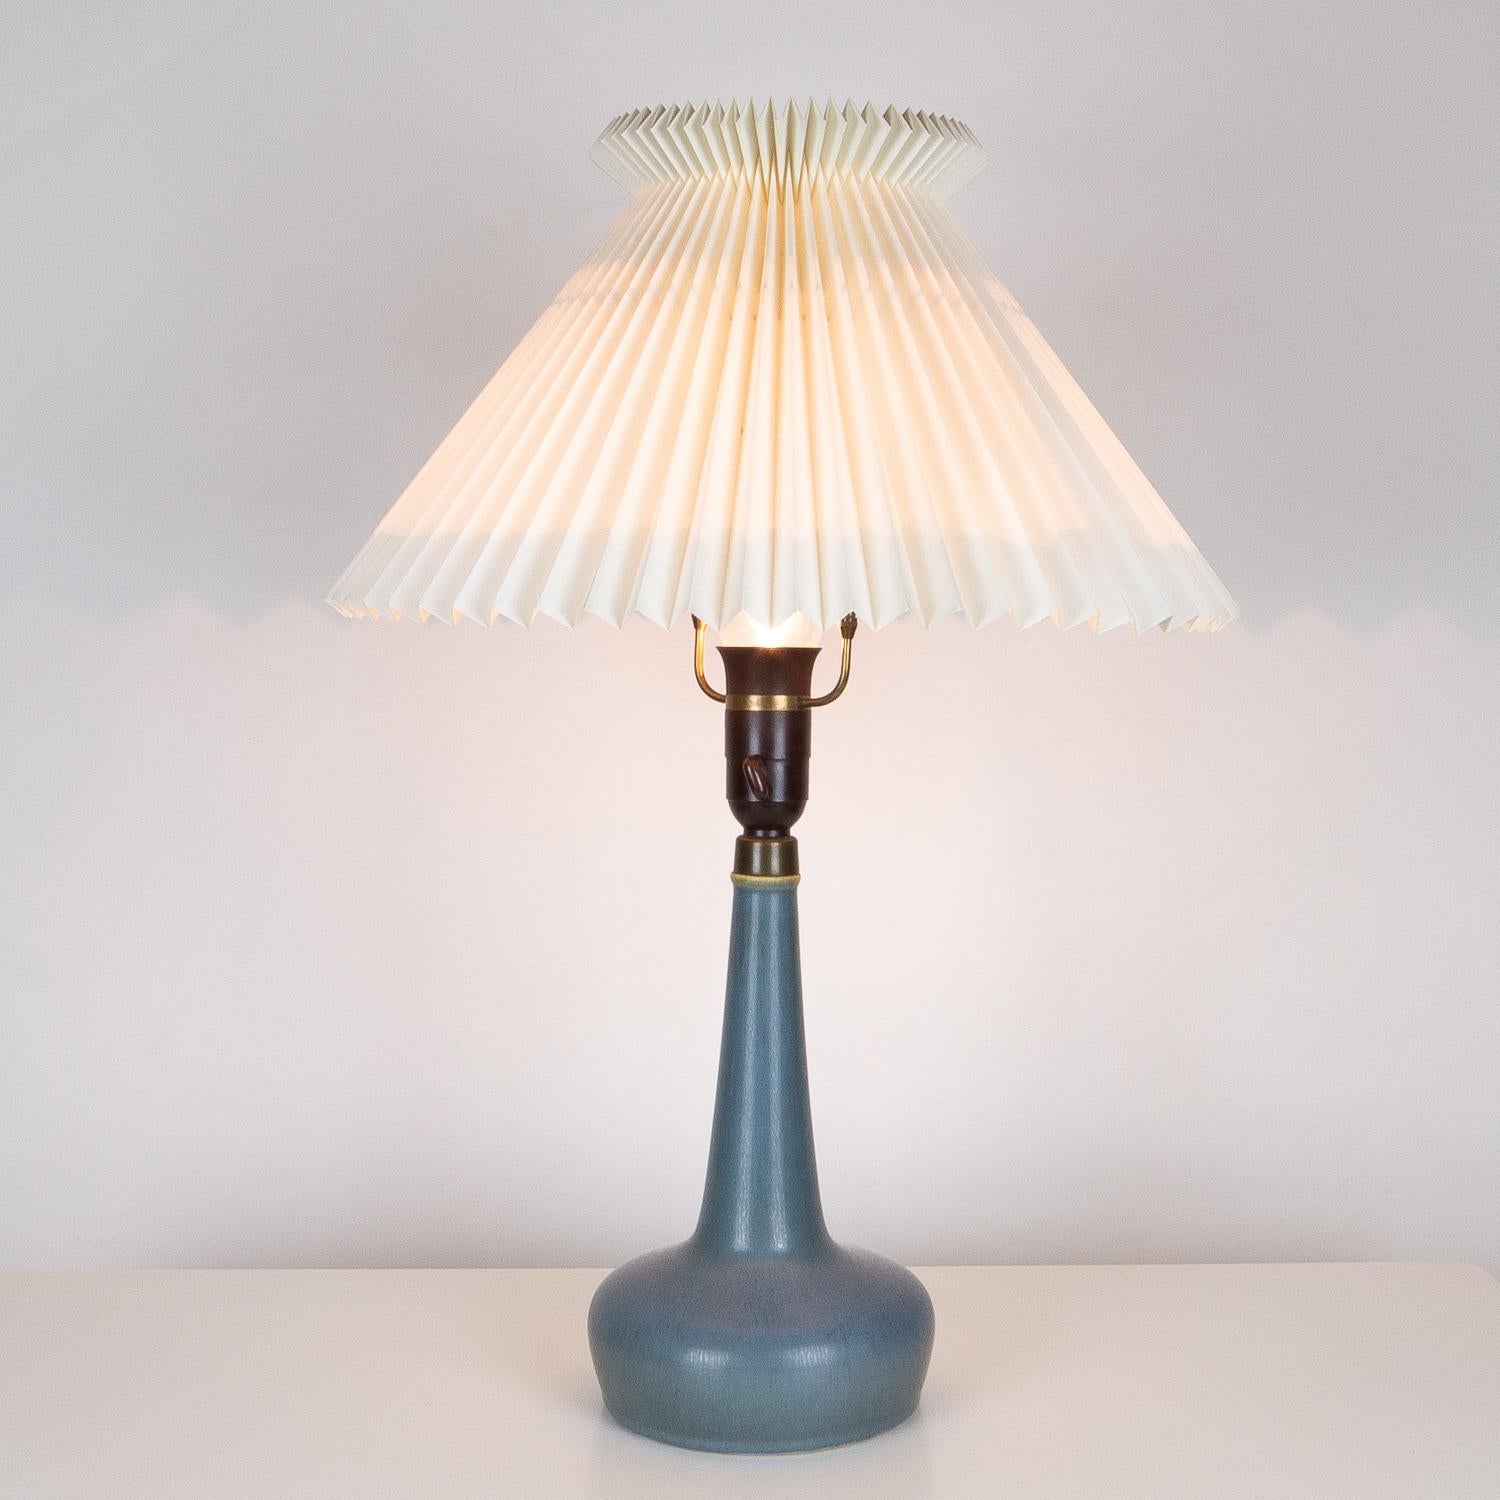 Mid-Century Modern Very Rare Model 311 Table Lamp by Esben Klint & Palshus for Le Klint, Denmark